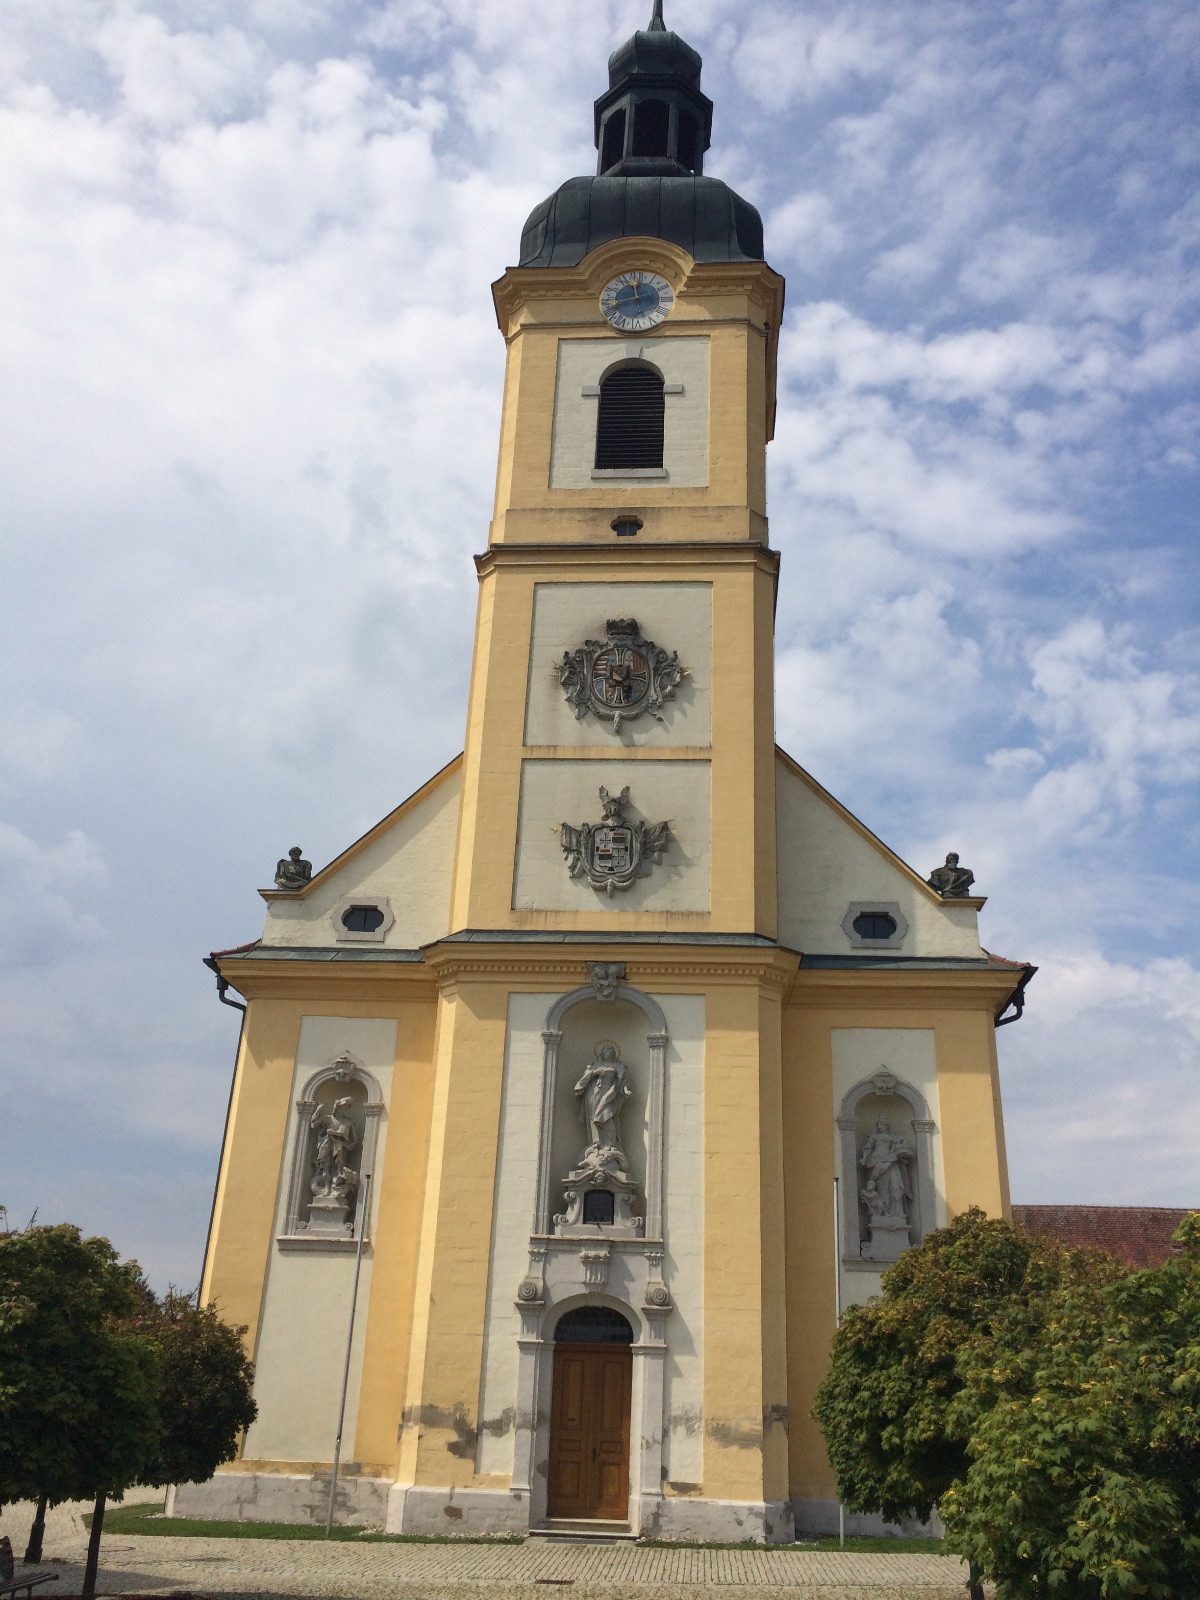 Auf dem Bild sieht man die St. Augustinus Kirche in Stopfenheim, die in gelb und weiß gehalten ist und eine graue Turmspitze besitzt.